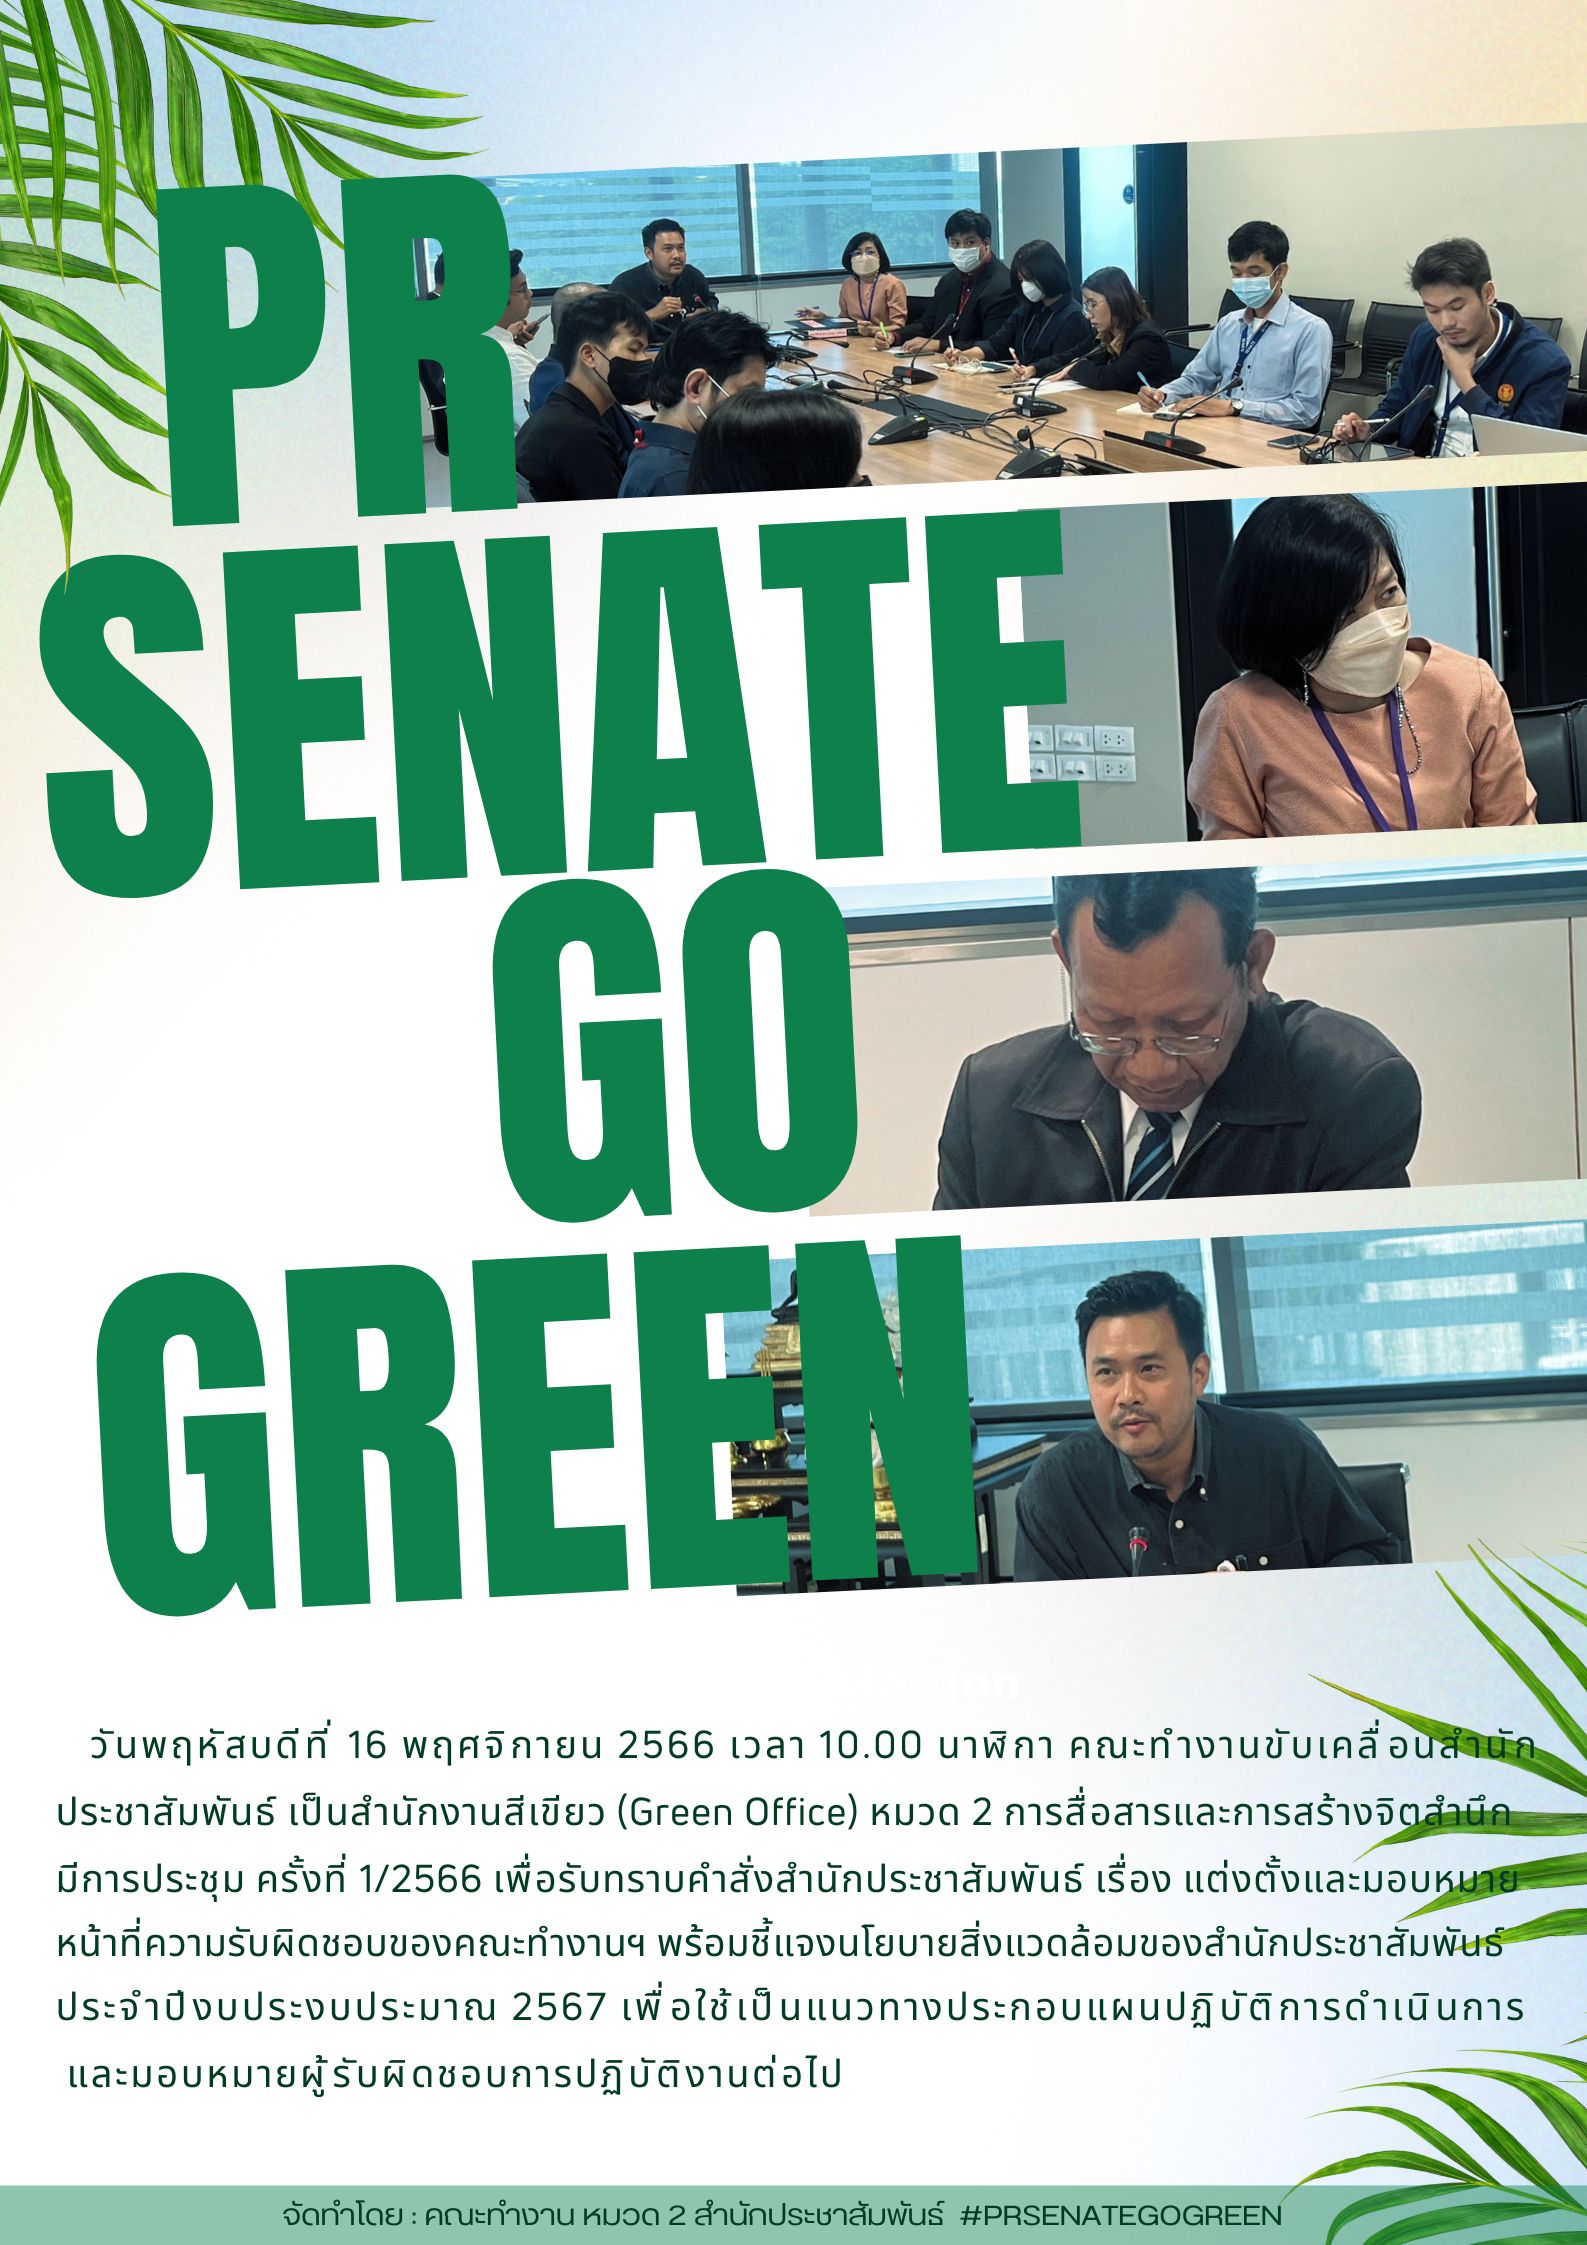 วันพฤหัสบดีที่ 16 พฤศจิกายน 2566 เวลา 10.00 นาฬิกา ประชุมคณะทำงานขับเคลื่อนสำนักประชาสัมพันธ์ เป็นสำนักงานสีเขียว (Green Office) หมวด 2 การสื่อสารและการสร้างจิตสำนึก